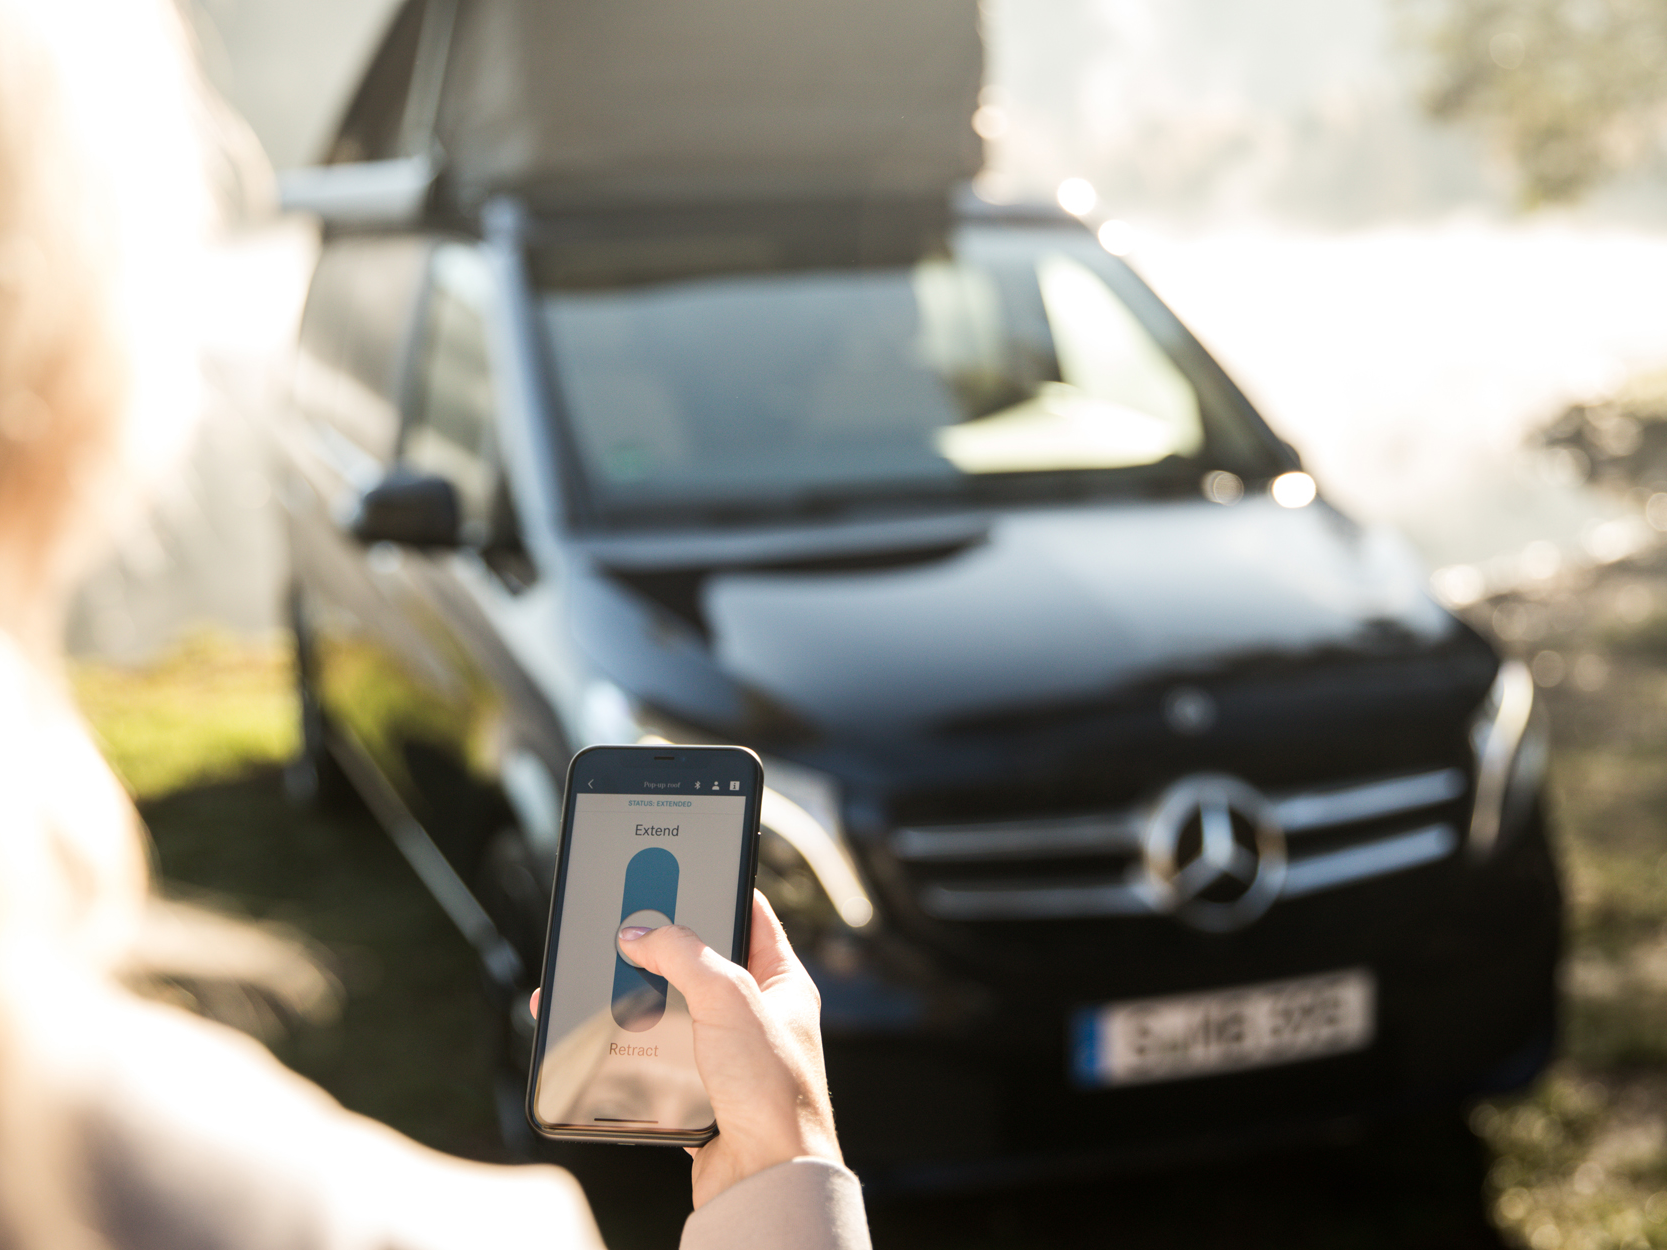 Mercedes-Benz heeft in Stuttgart de nieuwe kampeerbus op de markt gebracht, de Marco Polo. De luxe camper kan met een smartphone app worden aangestuurd.